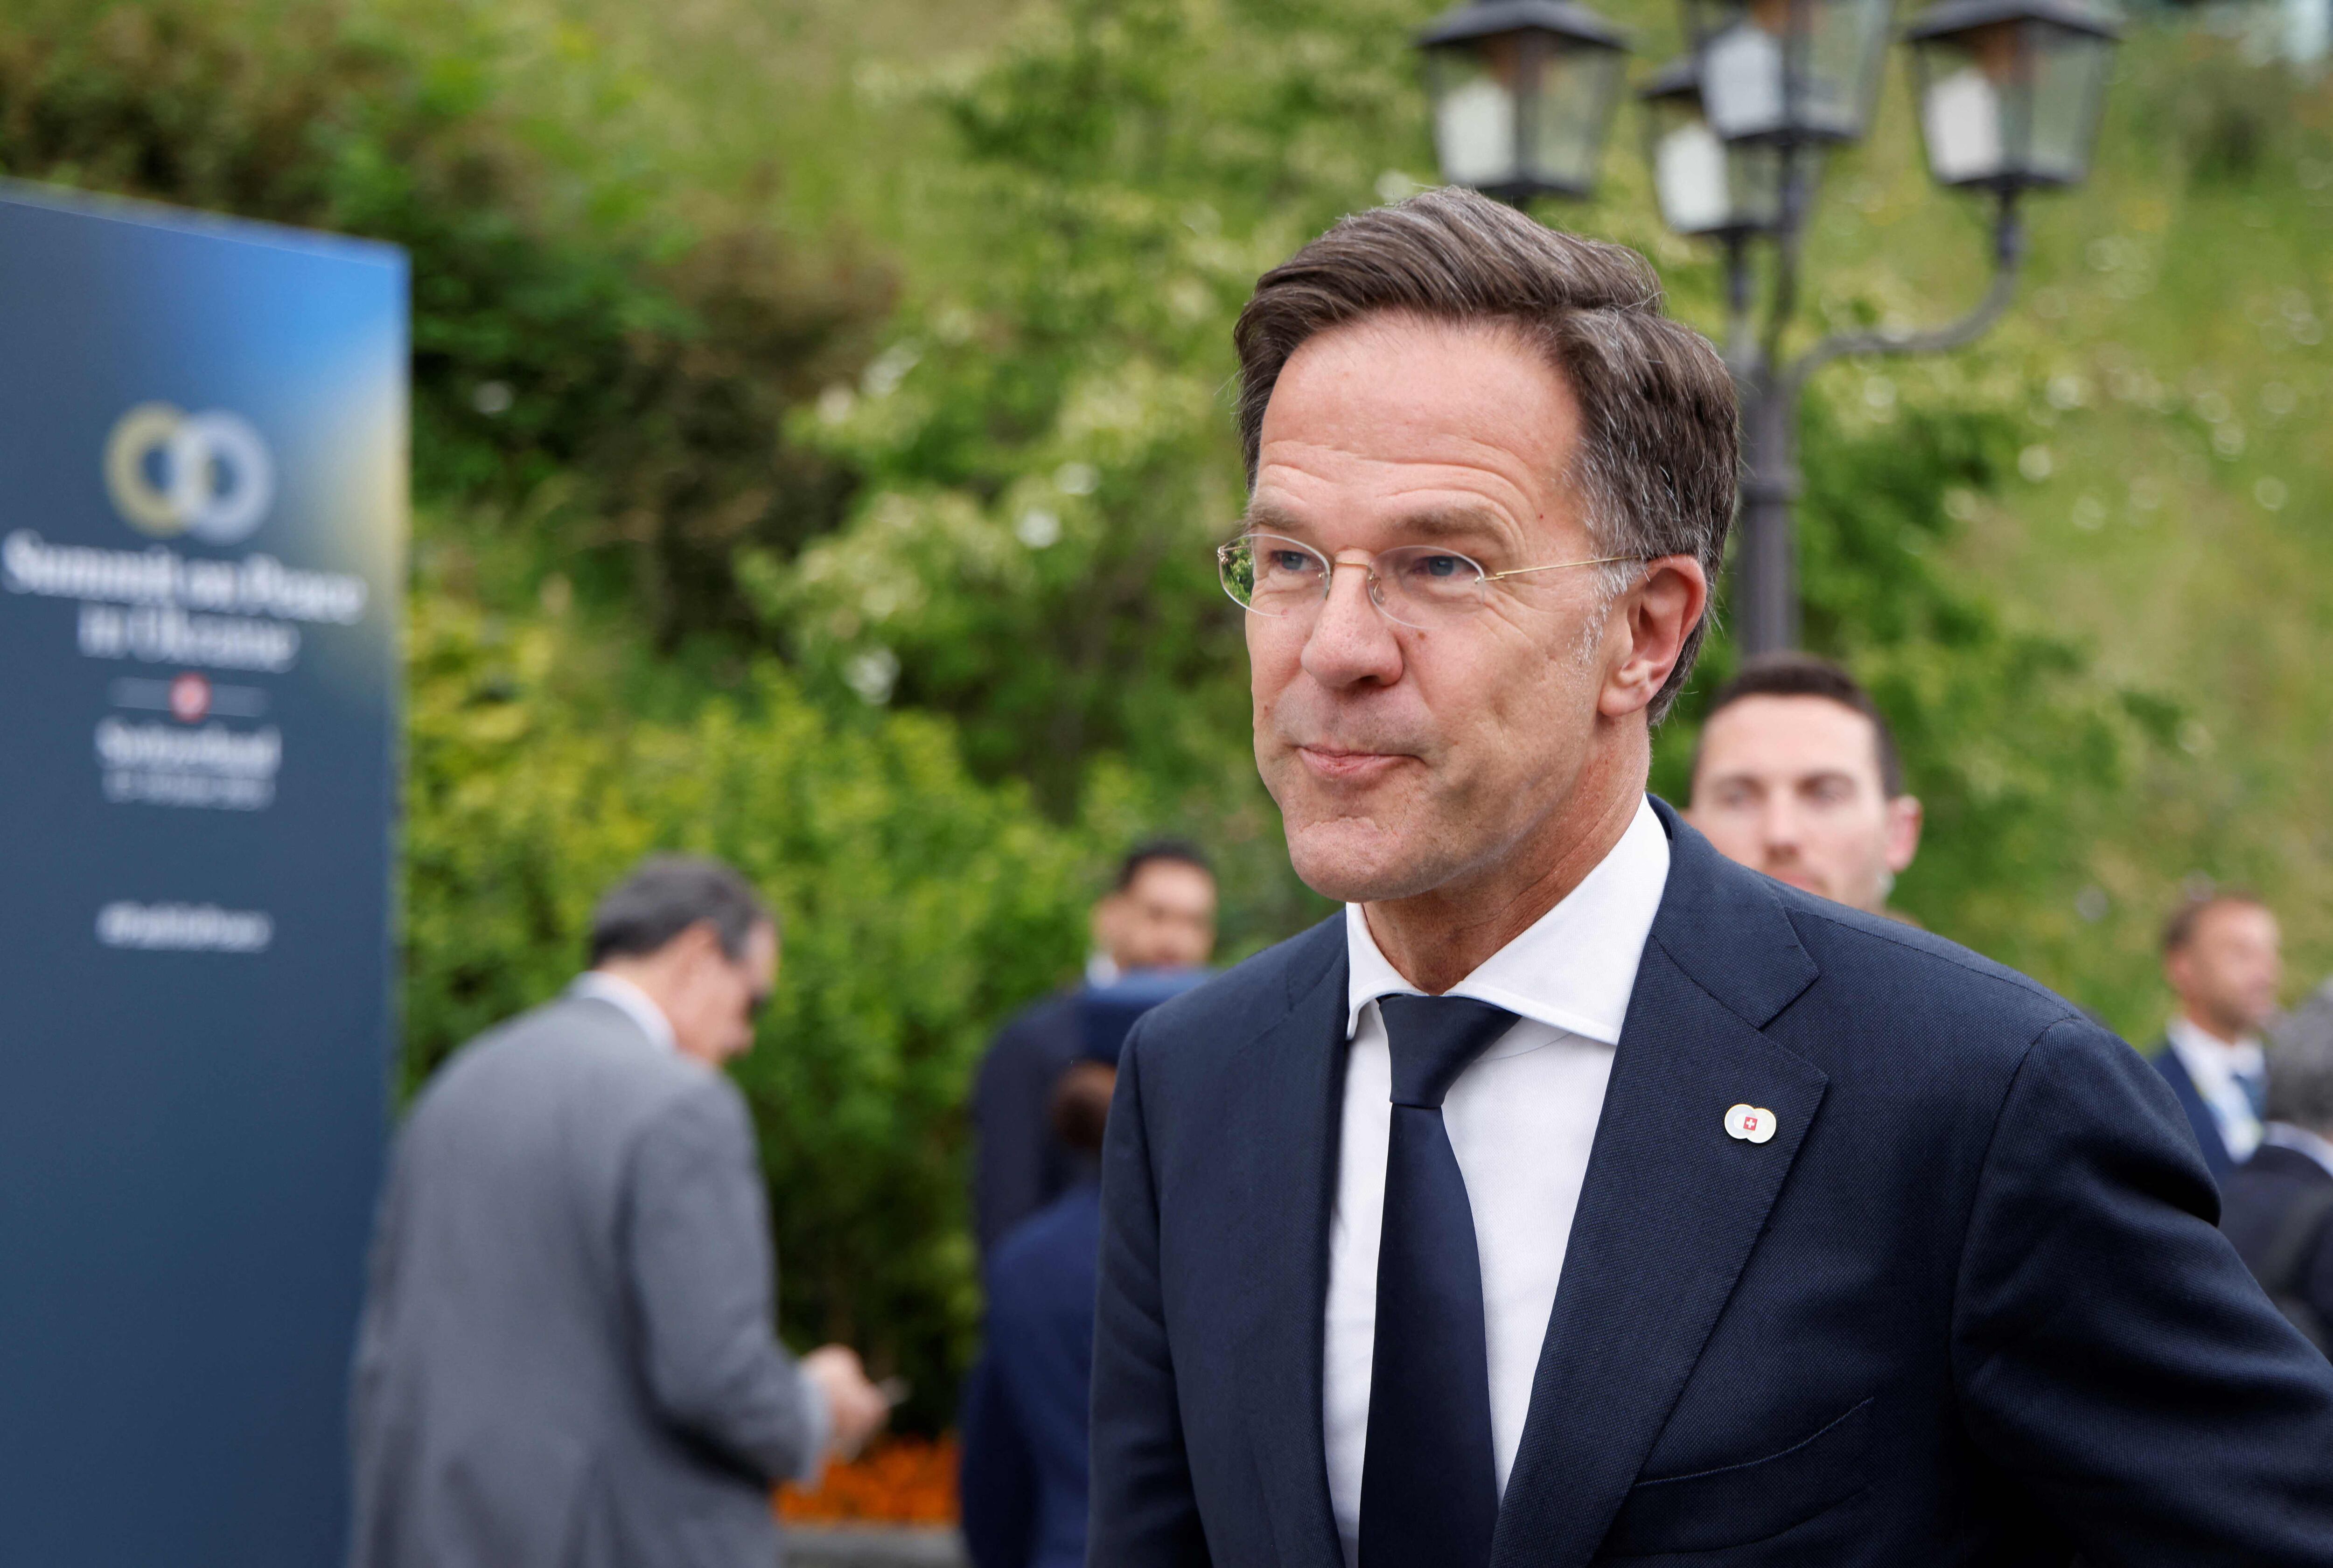 El neerlandés Mark Rutte, recientemente nombrado secretario general de la OTAN, se prepara para dirigir la alianza en un periodo crítico de tensiones internacionales. (Foto: Ludovic MARIN / AFP)